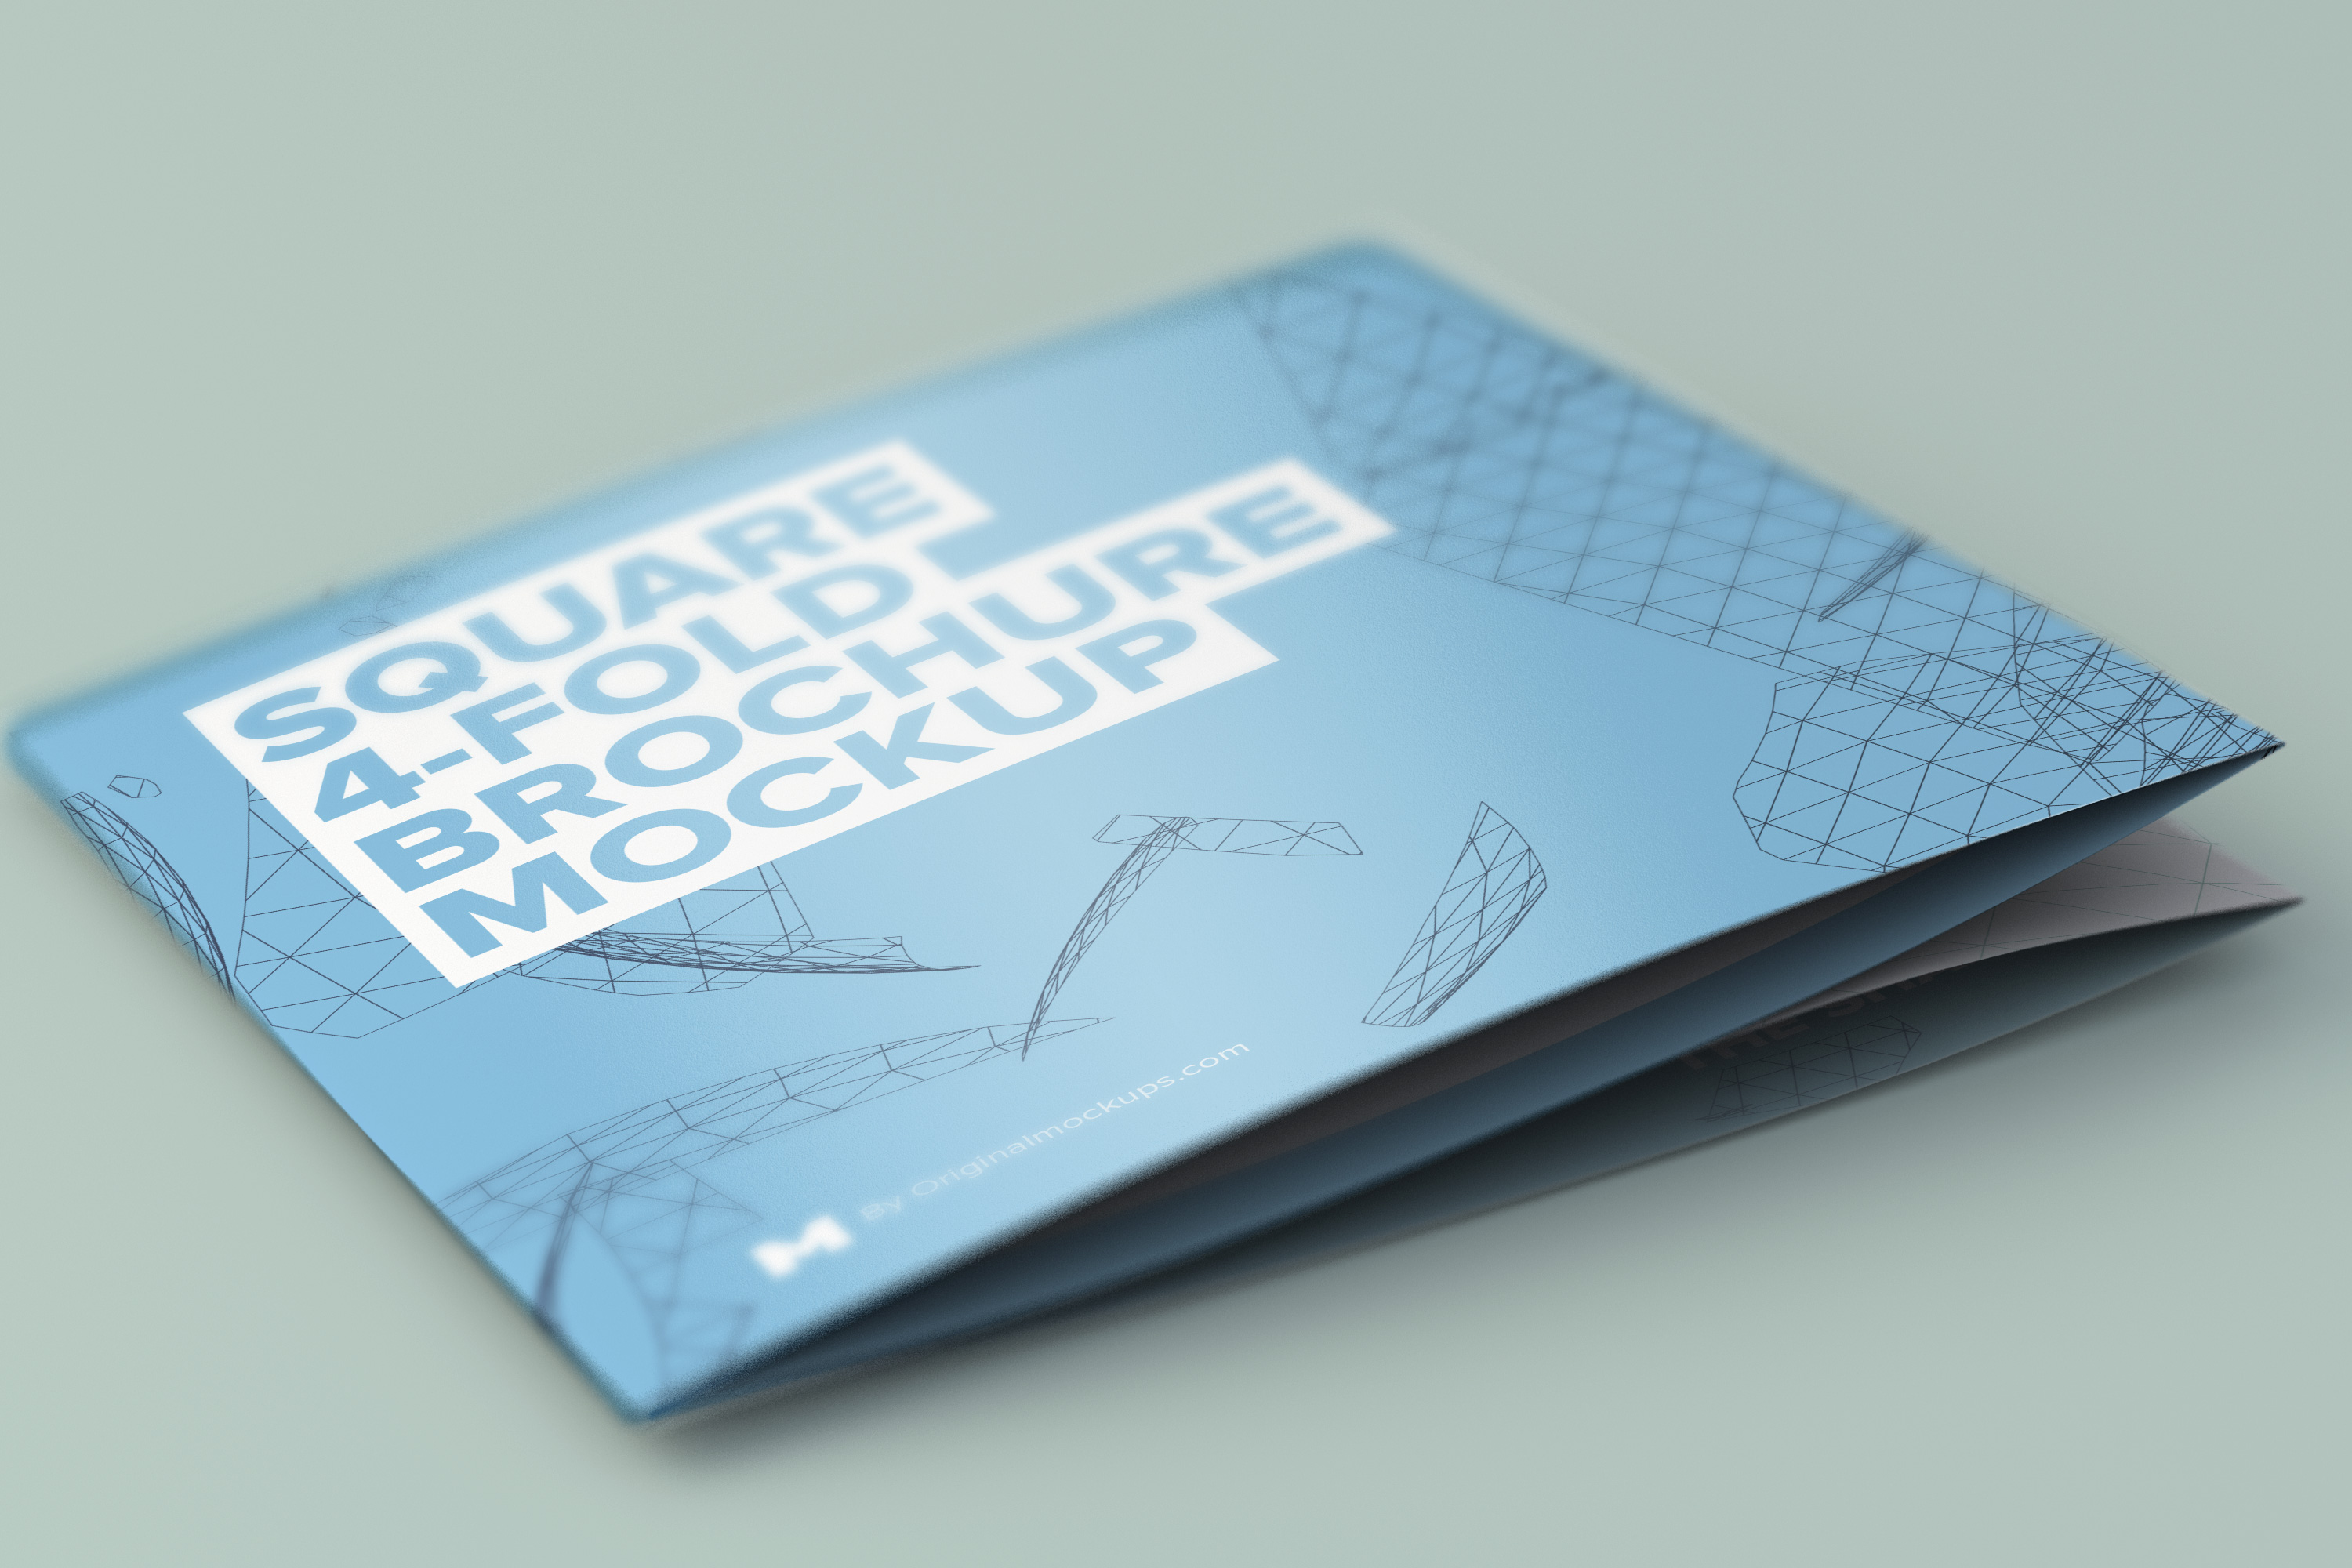 四折页方形折叠宣传册&传单封面设计样机模板 Folded Square 4-Fold Brochure Mockup插图(1)